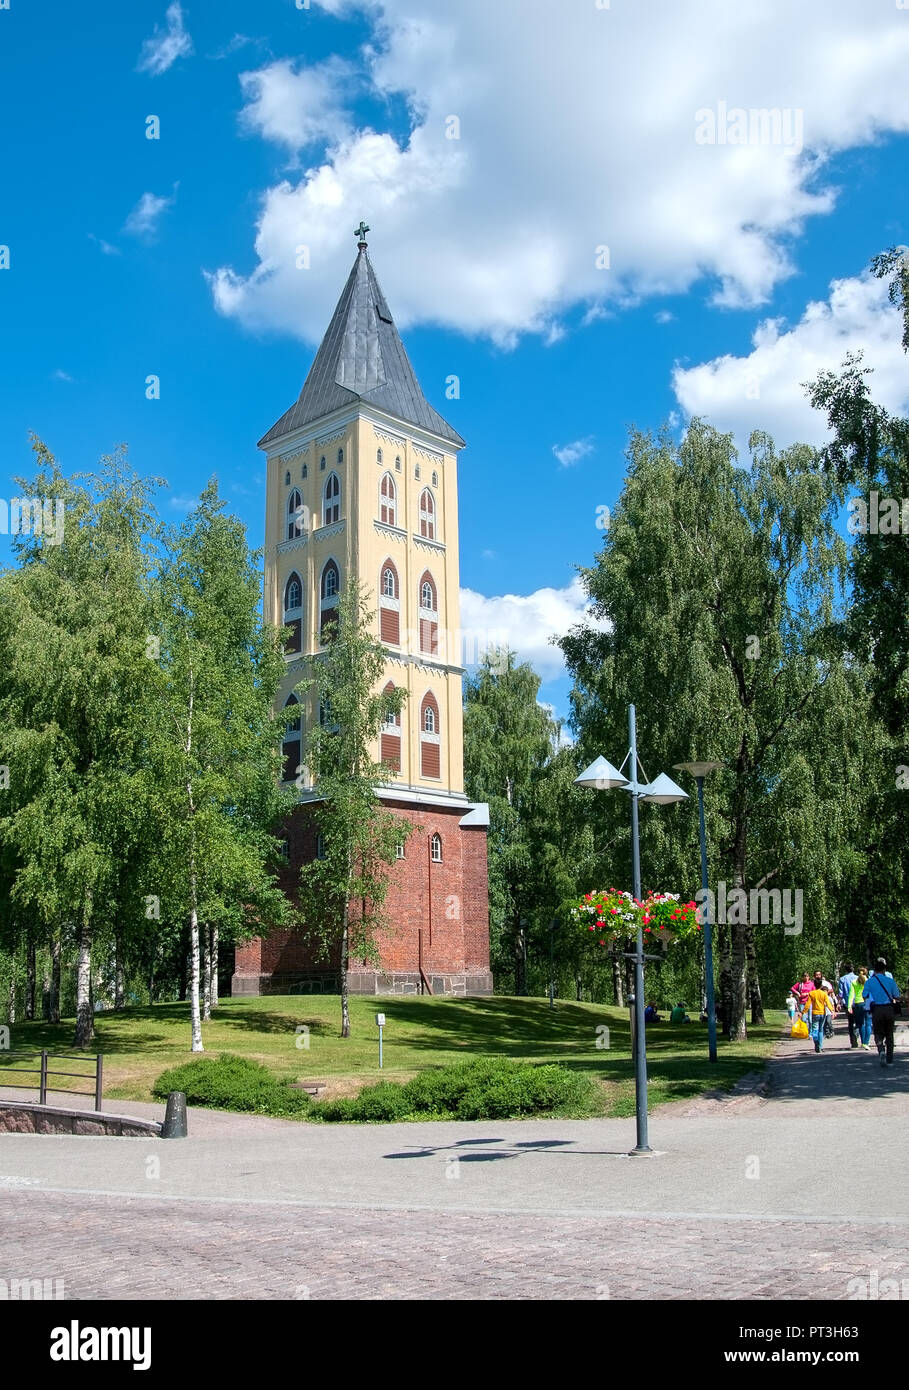 LAPPEENRANTA, Finlandia - 15 giugno 2016: la torre campanaria della chiesa di Santa Maria sul Kauppakatu Street. Fu costruito nel 1856 dall'architetto Ernst B. Lohrmann Foto Stock